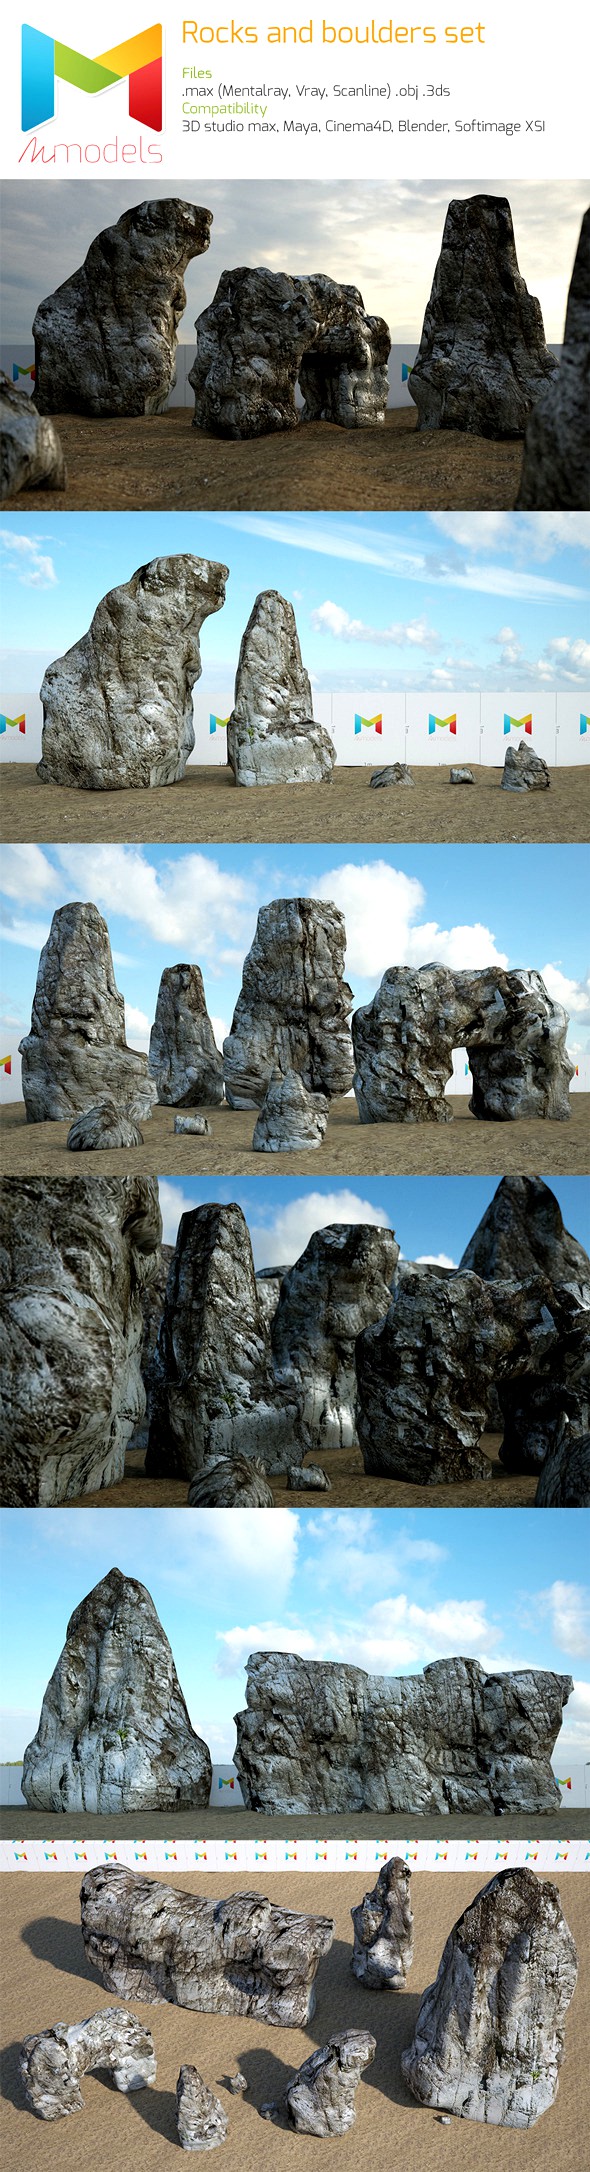 Rock and boulder set